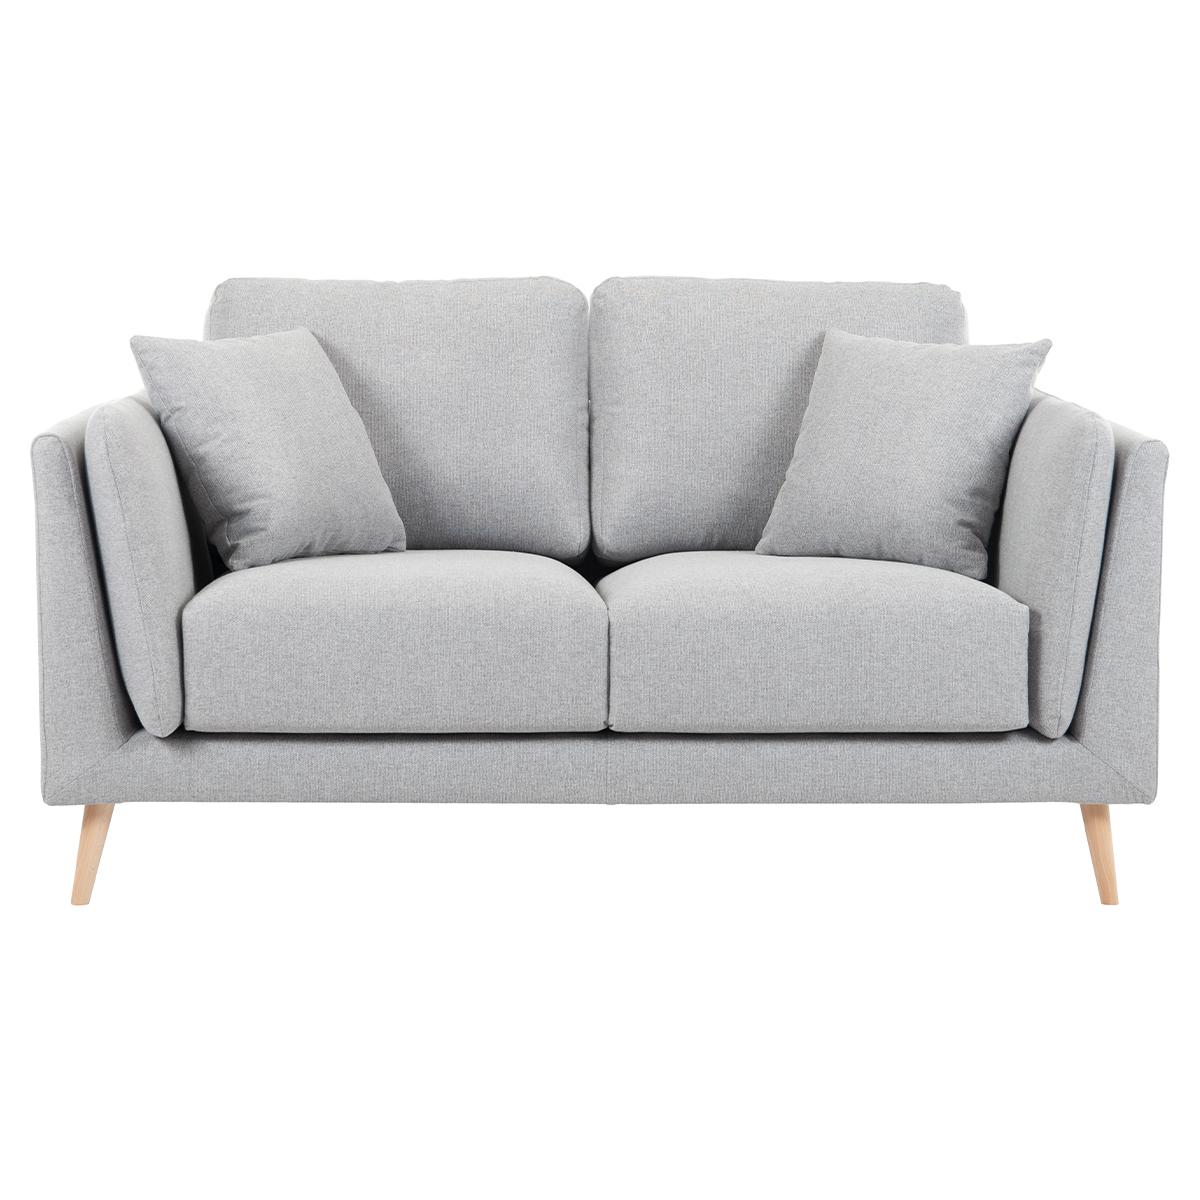 Canapé design 2 places en tissu gris clair VOGUE vue1